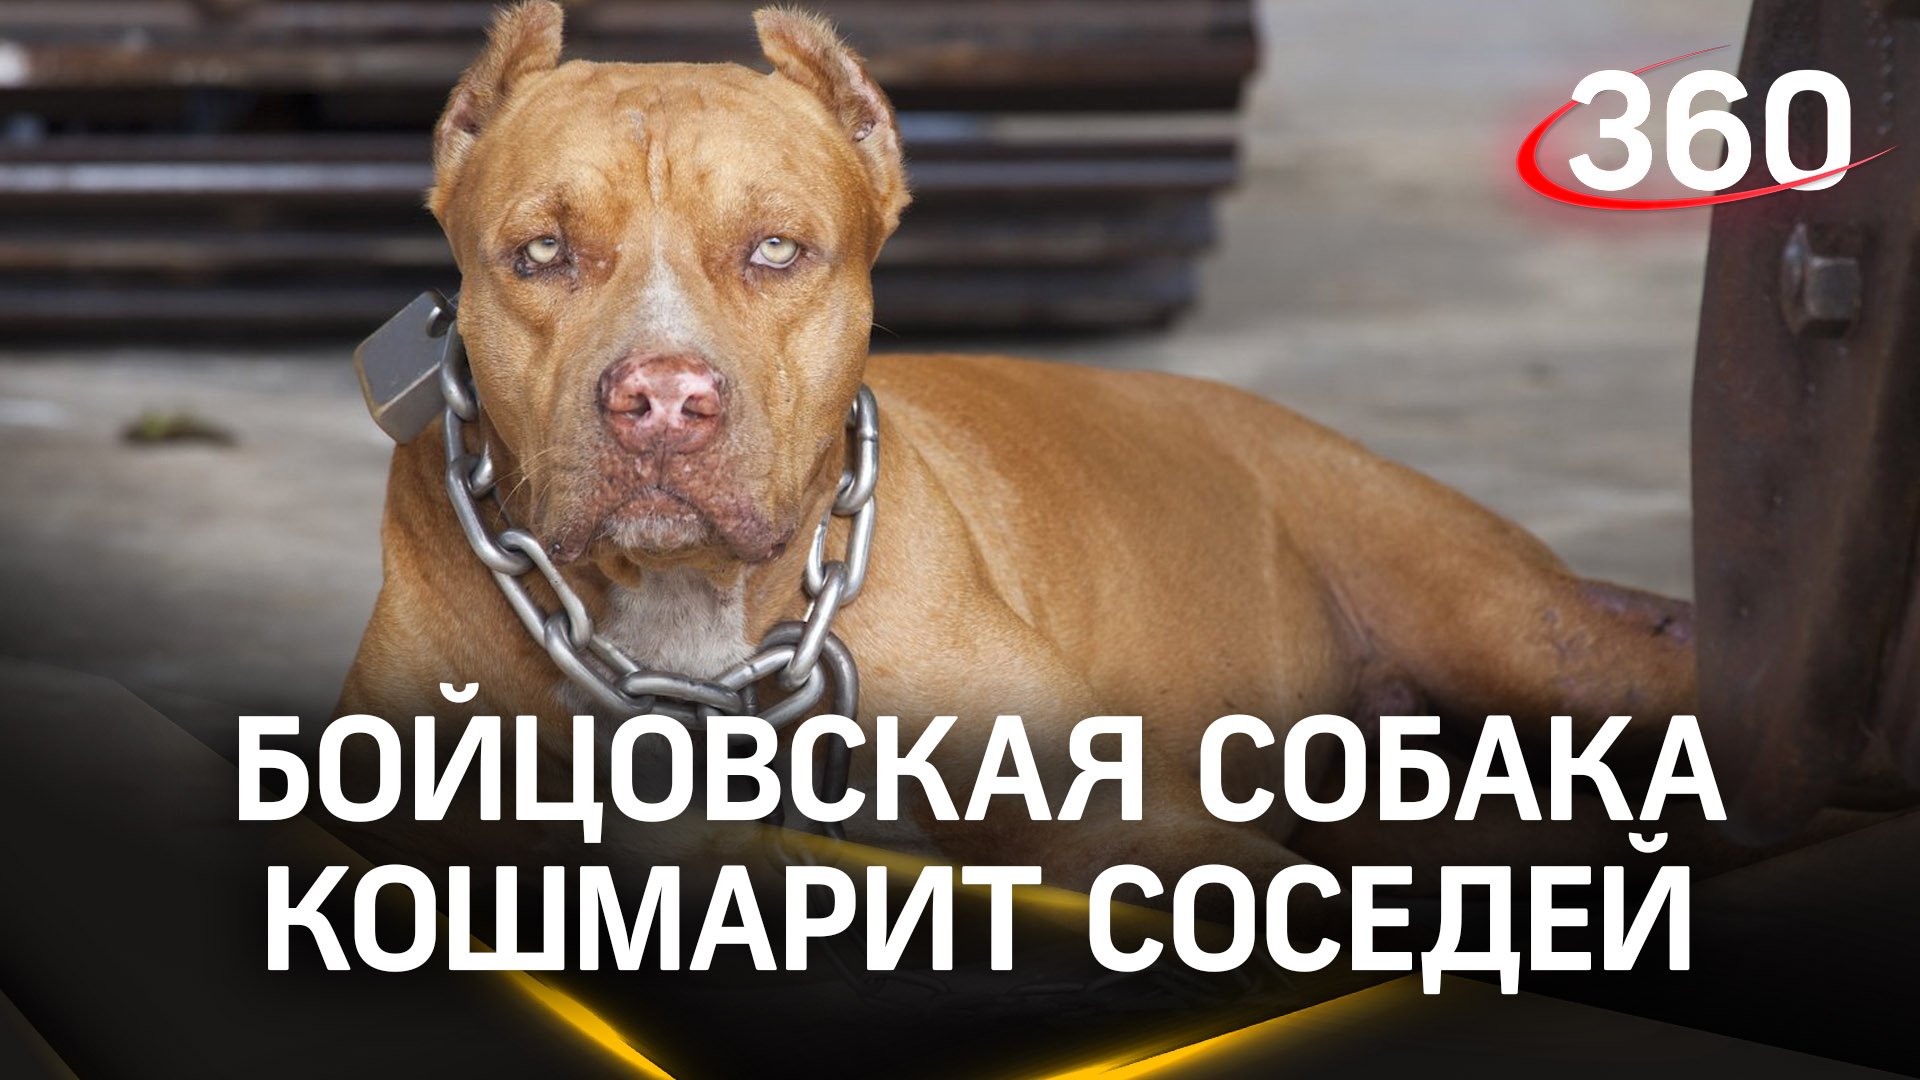 Стаффорд кошмарит дом во Владивостоке - на людей кидается и собака, и хозяйка